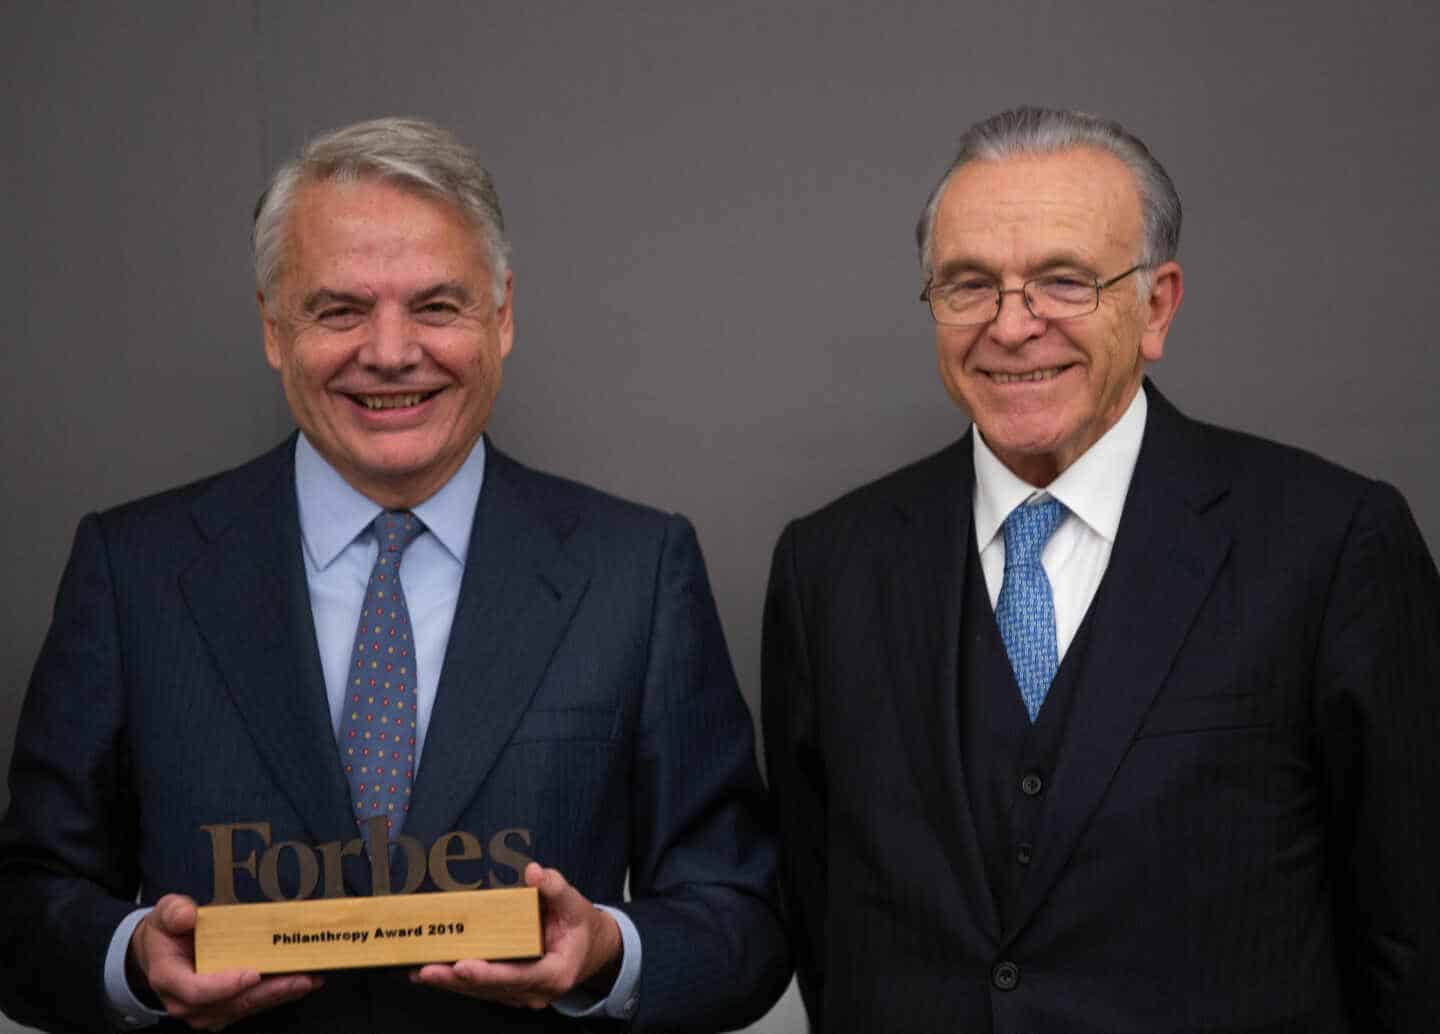 Ignacio Garralda recibe el Premio Forbes a la Filantropía 2019